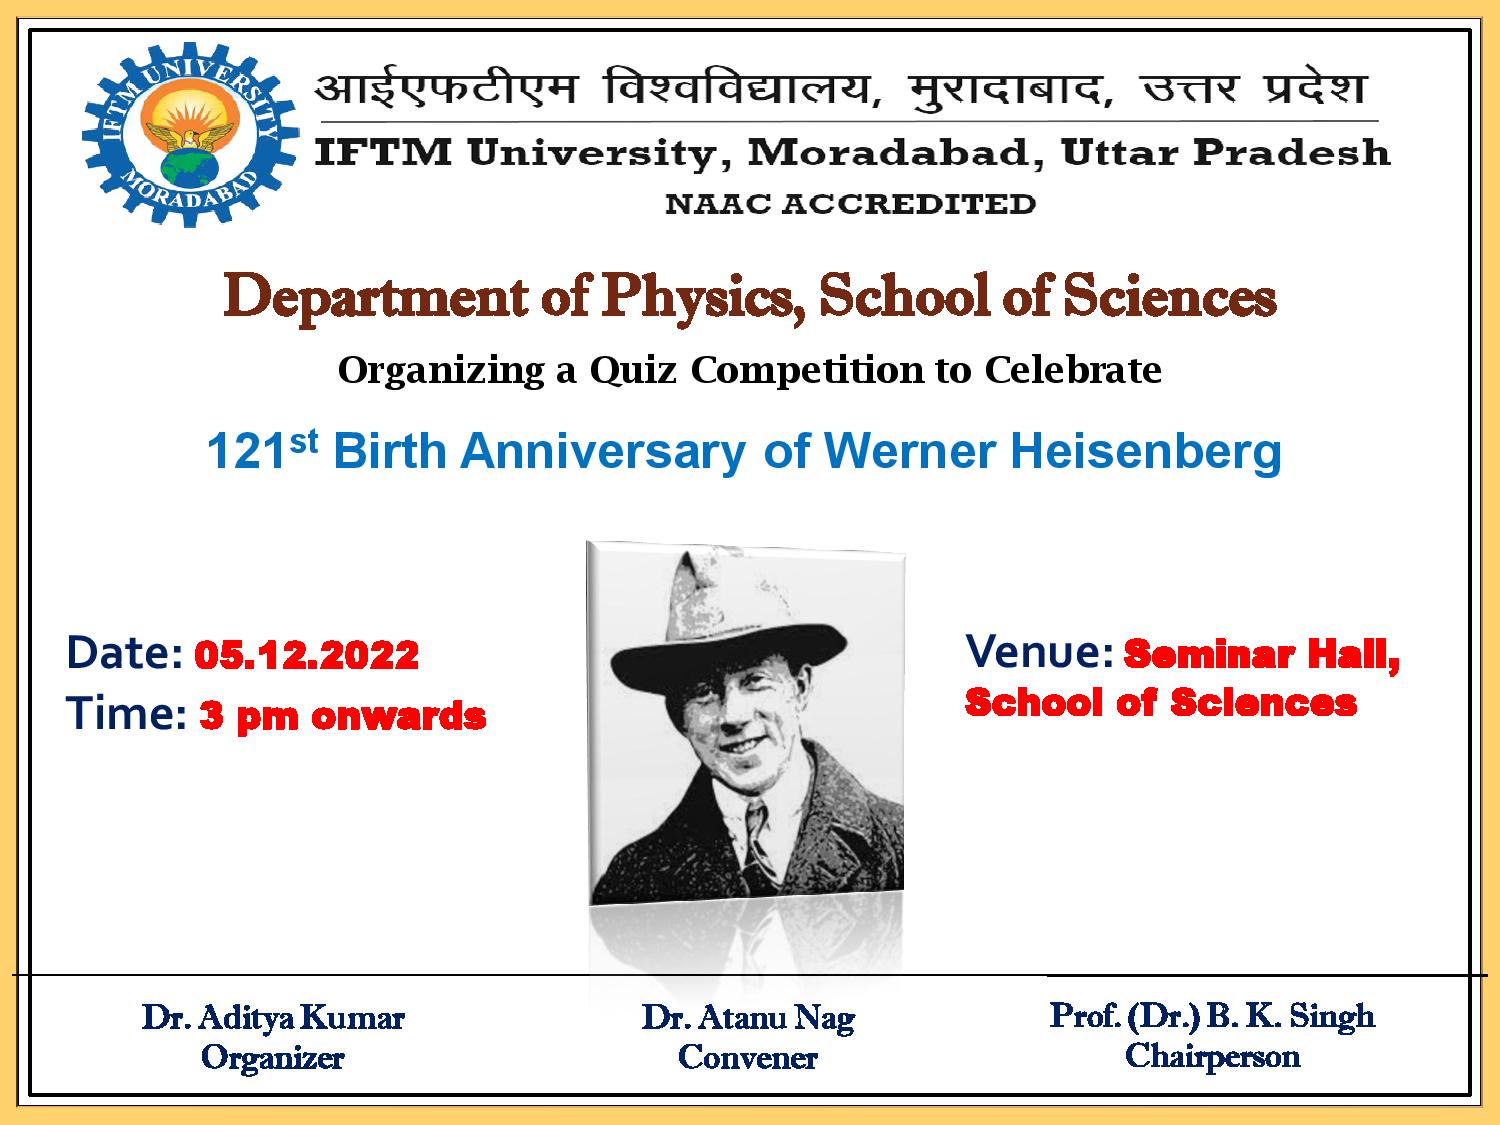 Quiz Competition on 121 Birth Anniversary of Werner Heisenberg